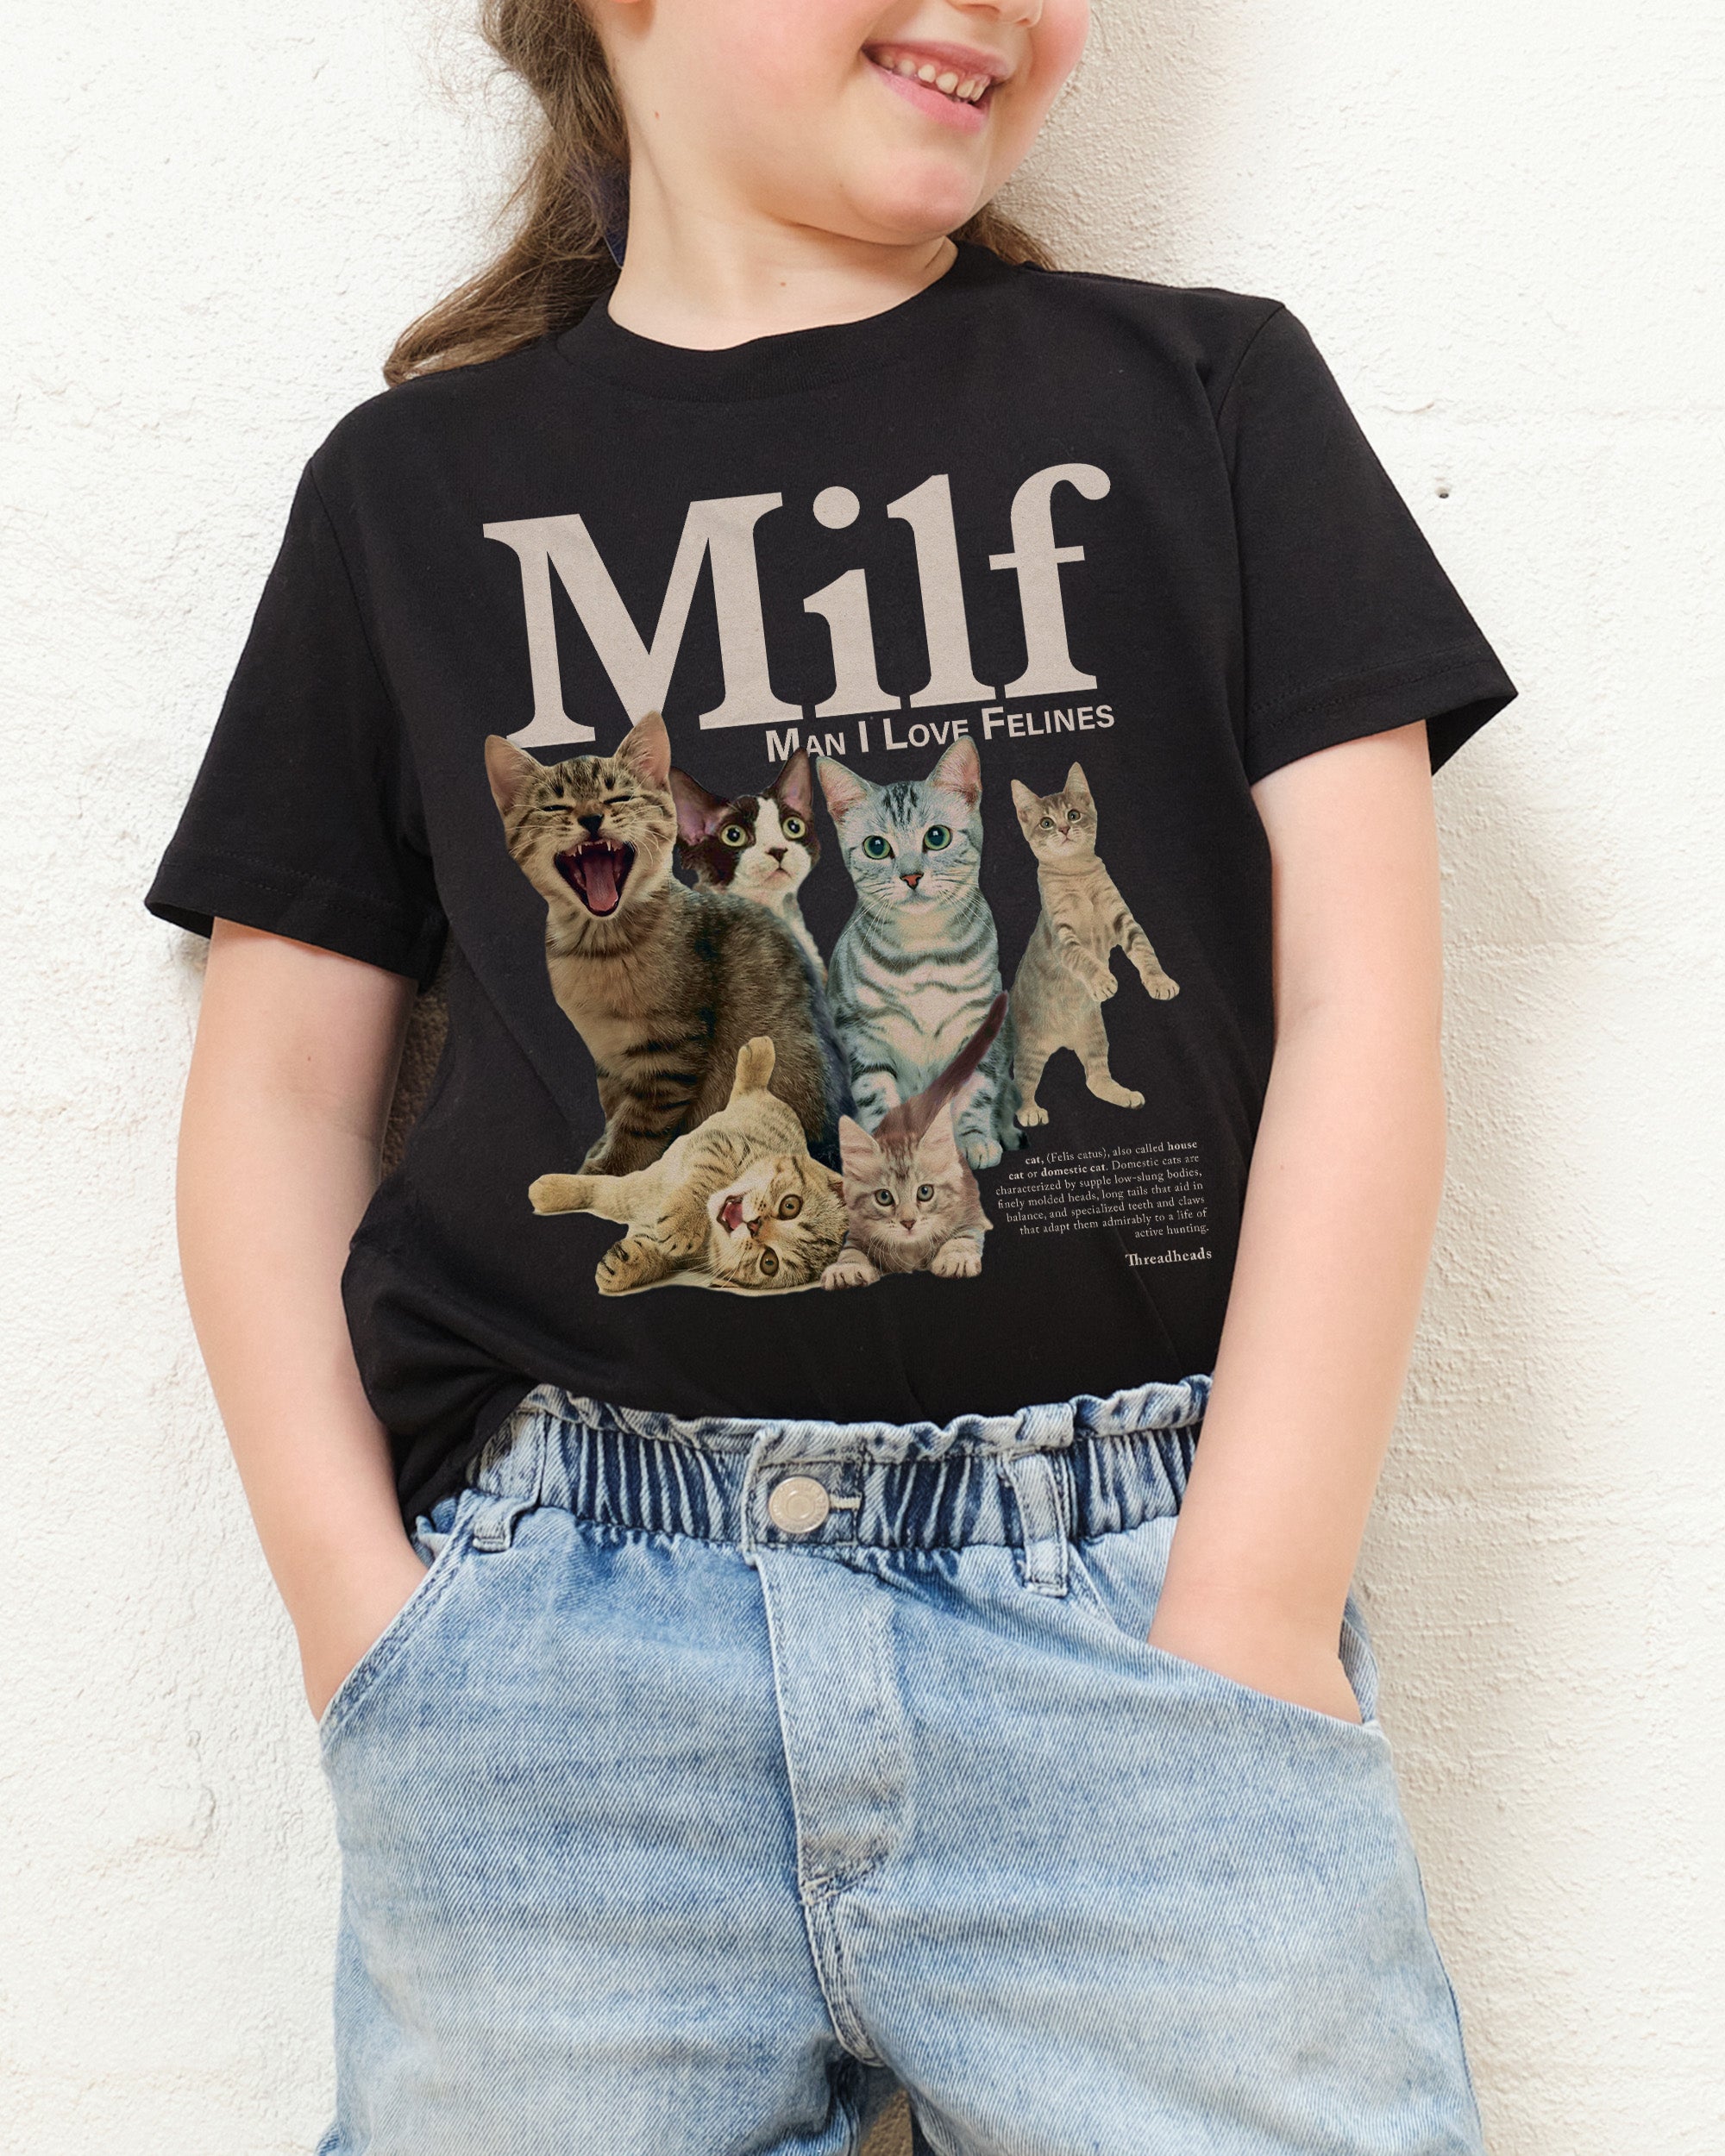 Man I Love Felines Kids T-Shirt Australia Online Black